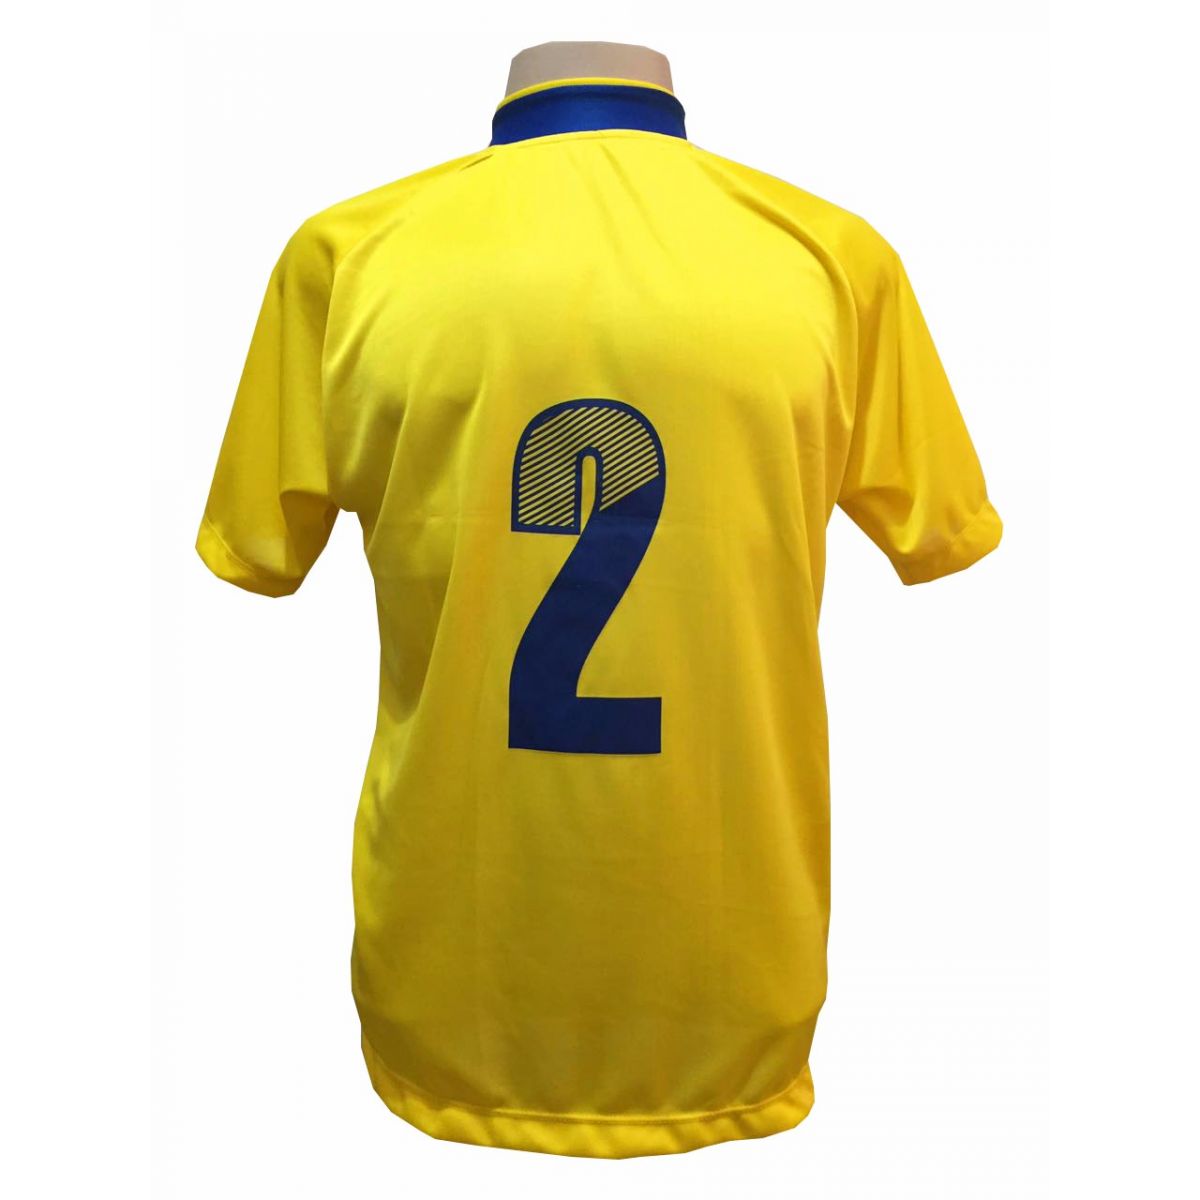 Uniforme Esportivo com 20 camisas modelo Bélgica Amarelo/Royal + 20 calções modelo Madrid + 1 Goleiro + Brindes